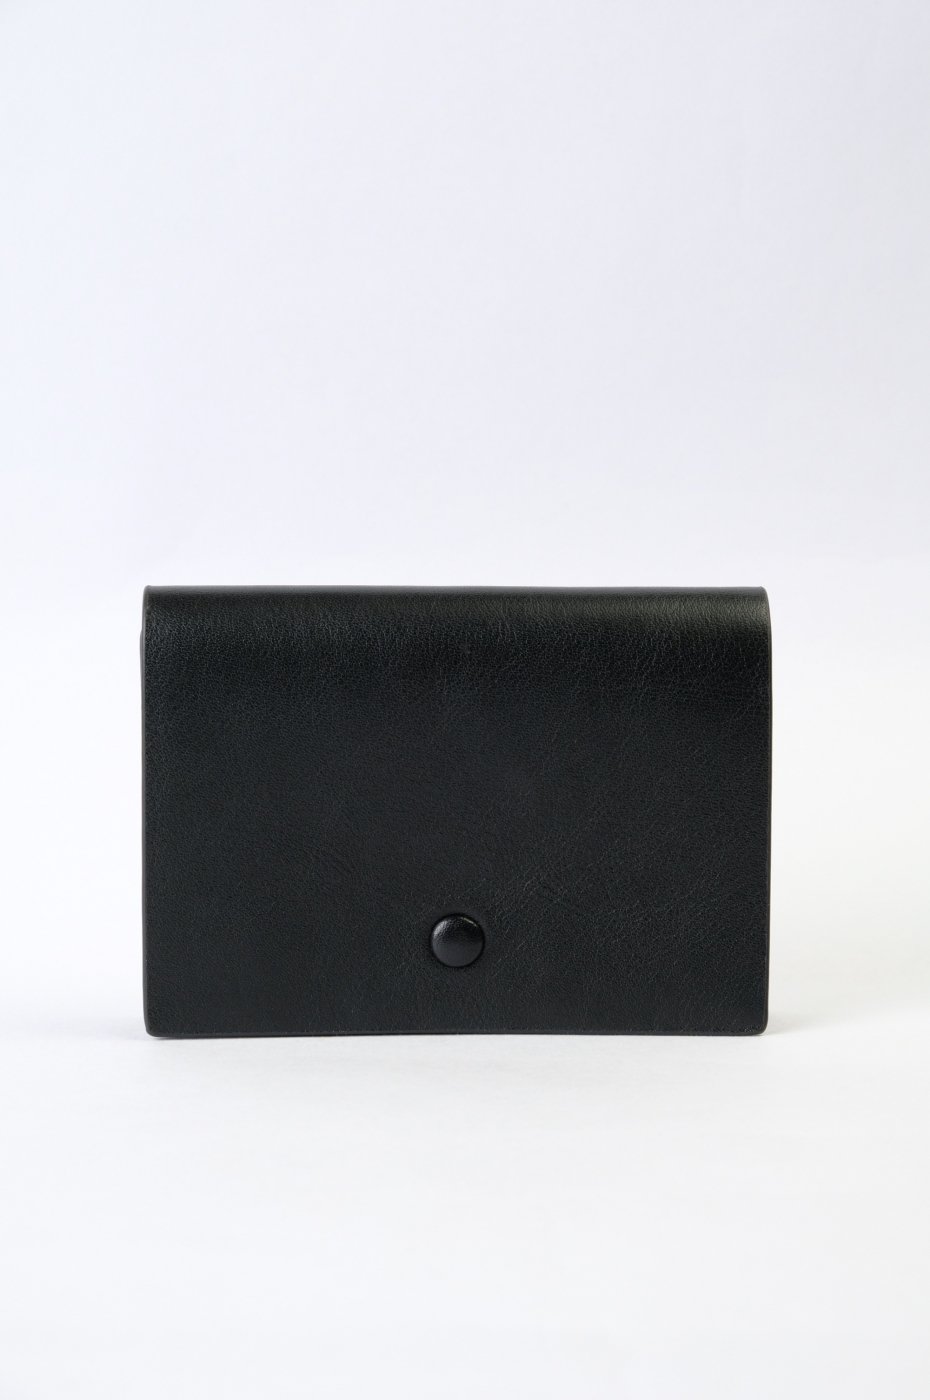 Aeta アエタ-FG31-CARD CASE-BLACK
